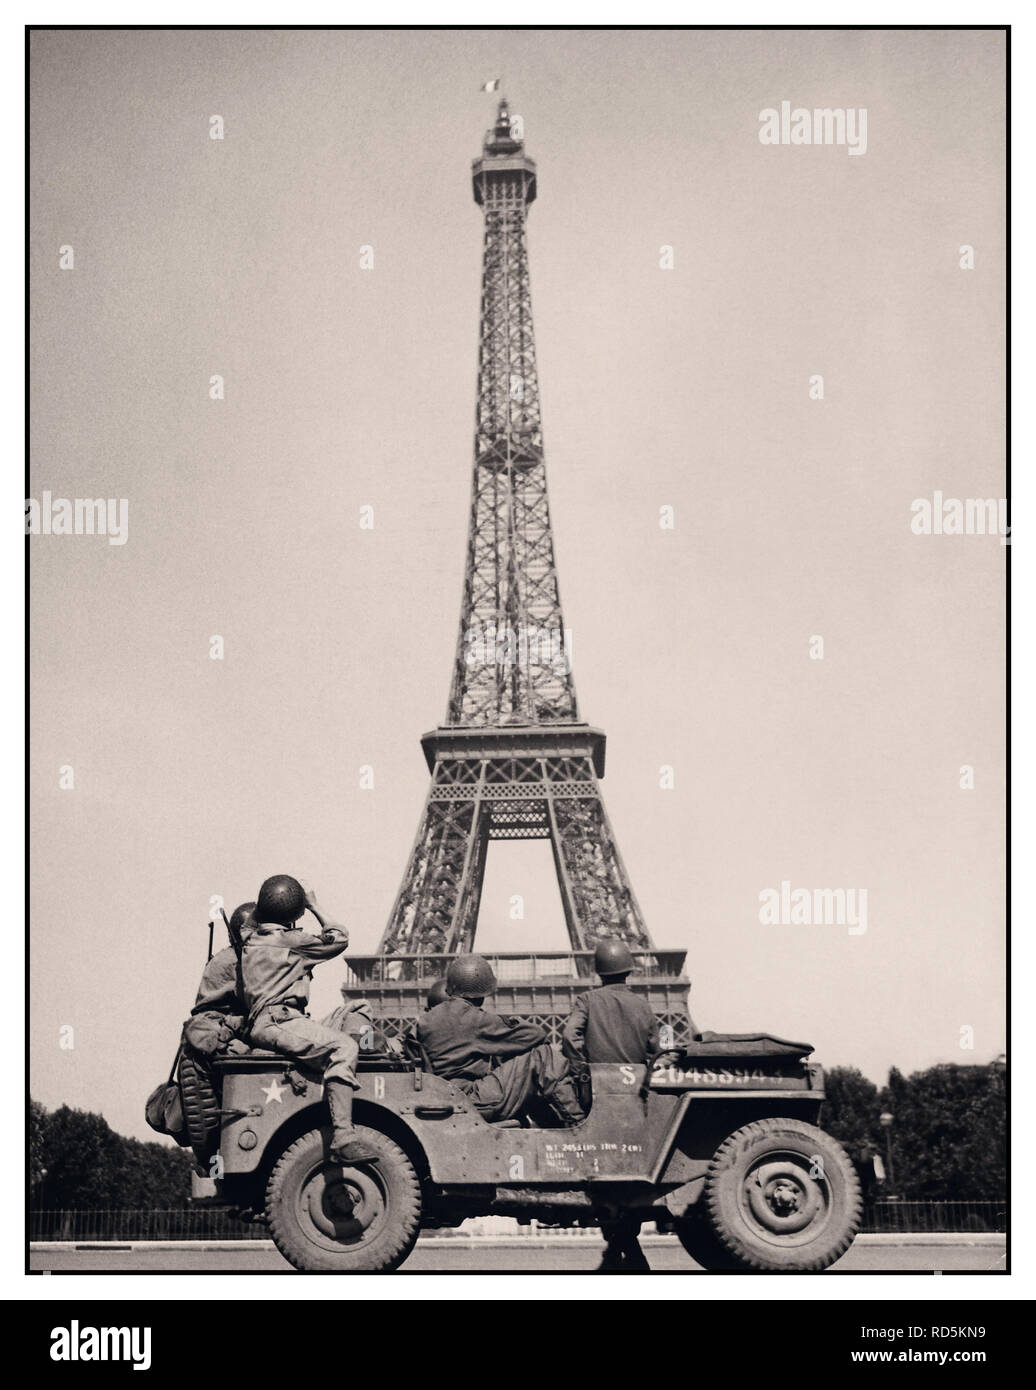 WW2 Paris Befreiung Befreiung der amerikanischen Truppen, die Sitzung in einem Willy Jeep, ein Foto der Eiffelturm, die die französische Trikolore, Paris Frankreich 1945 den Zweiten Weltkrieg Zweiten Weltkrieg nehmen Stockfoto